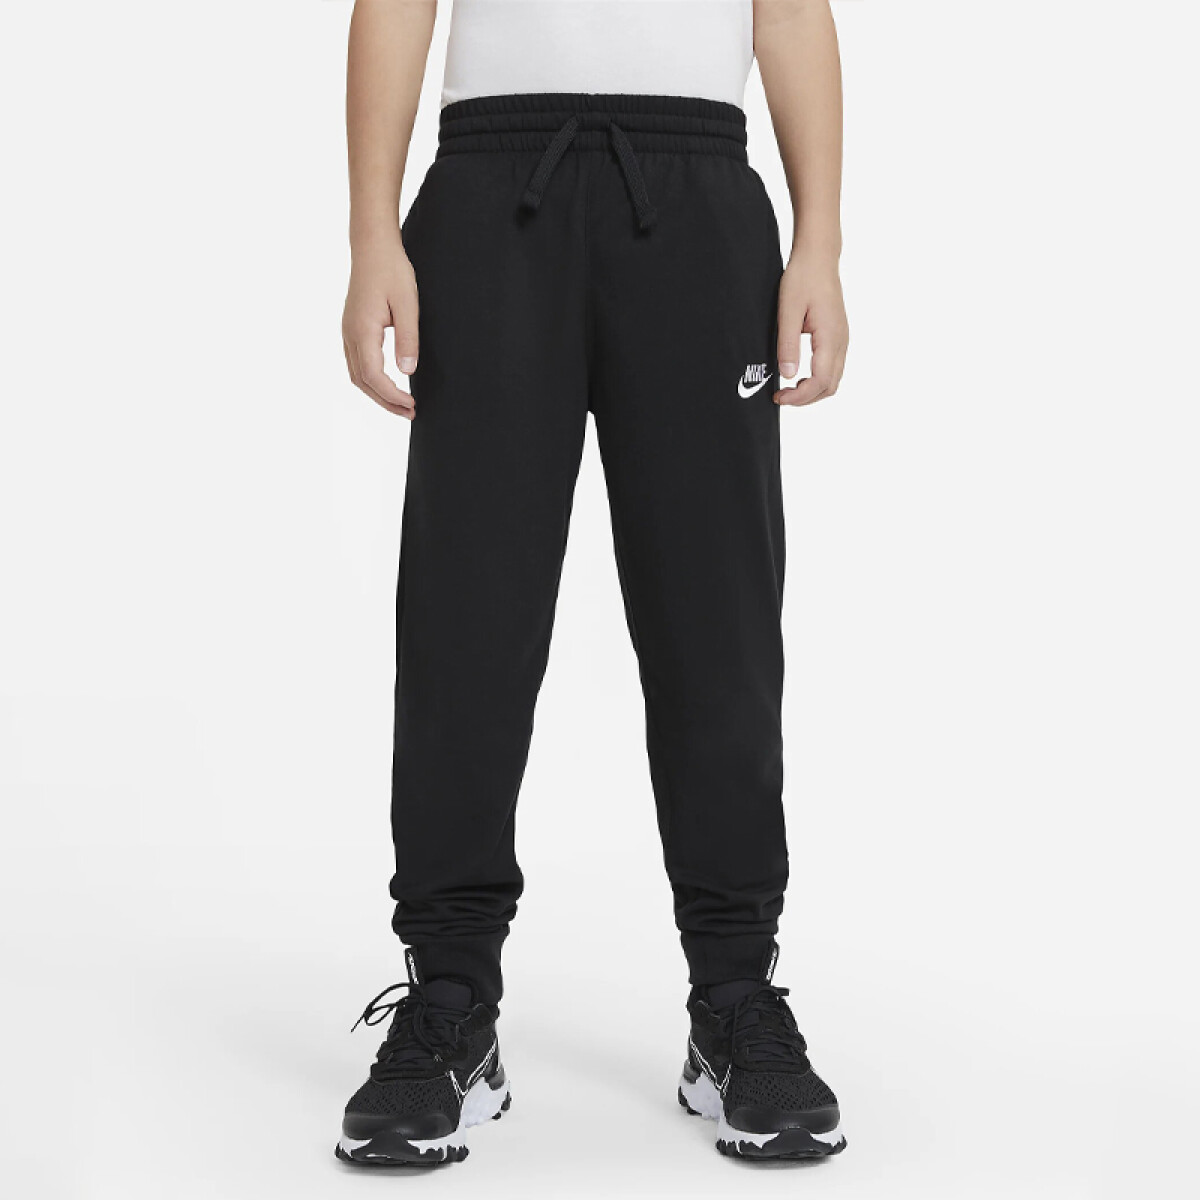 Pantalon Nike Jersey Jogger 